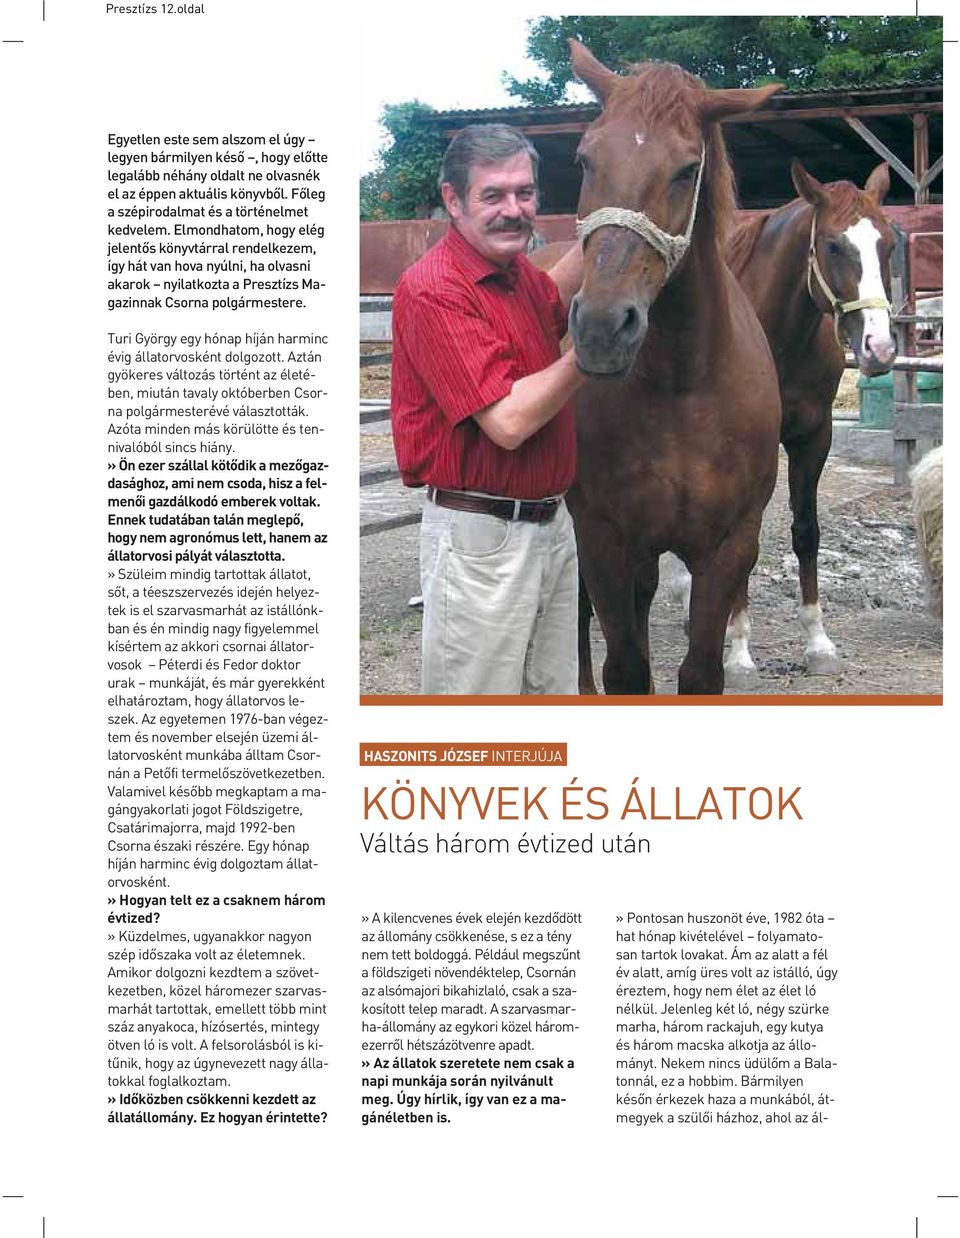 Turi György egy hónap híján harminc évig állatorvosként dolgozott. Aztán gyökeres változás történt az életében, miután tavaly októberben Csorna polgármesterévé választották.